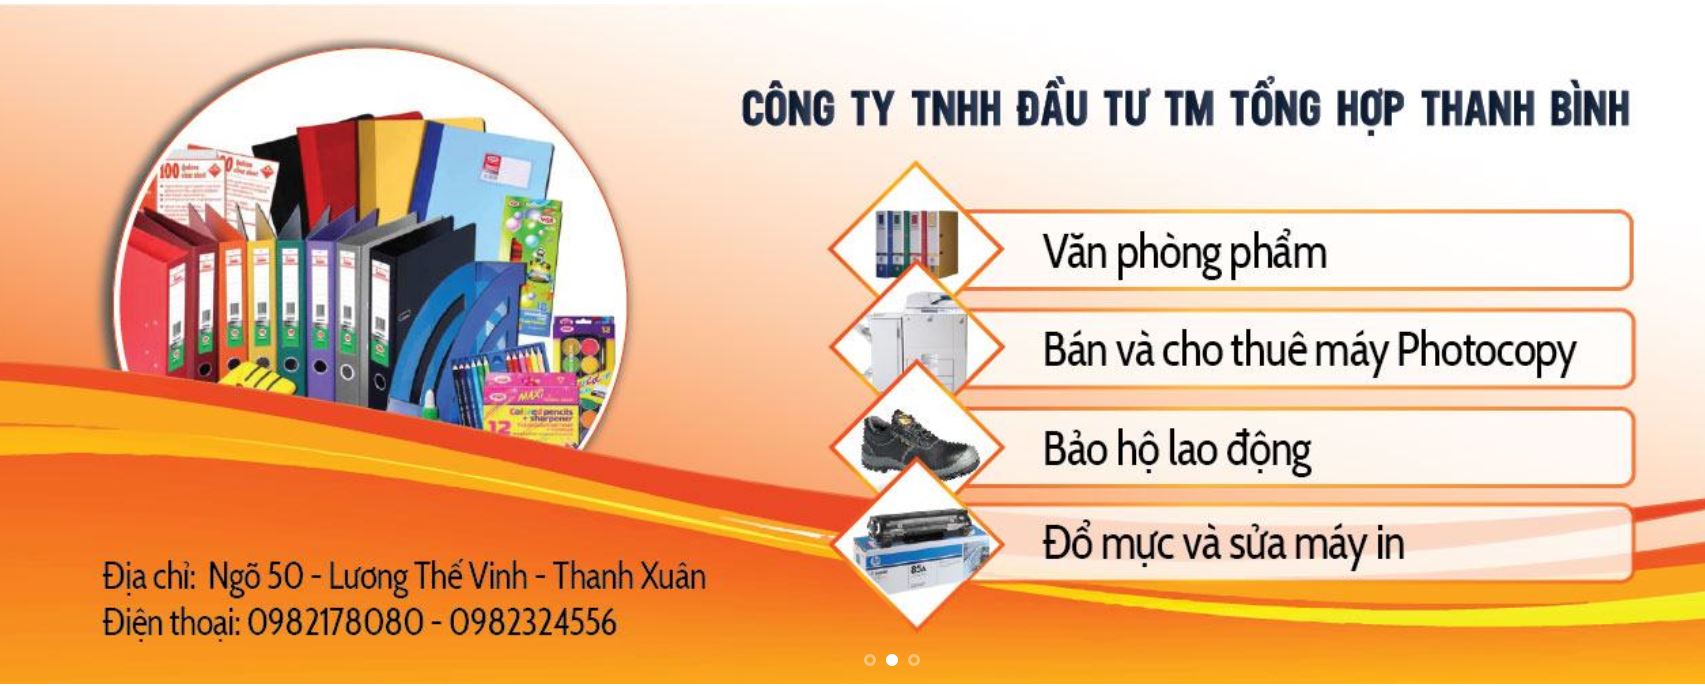 Cho thuê máy Photocopy tại Bắc Giang và các KCN